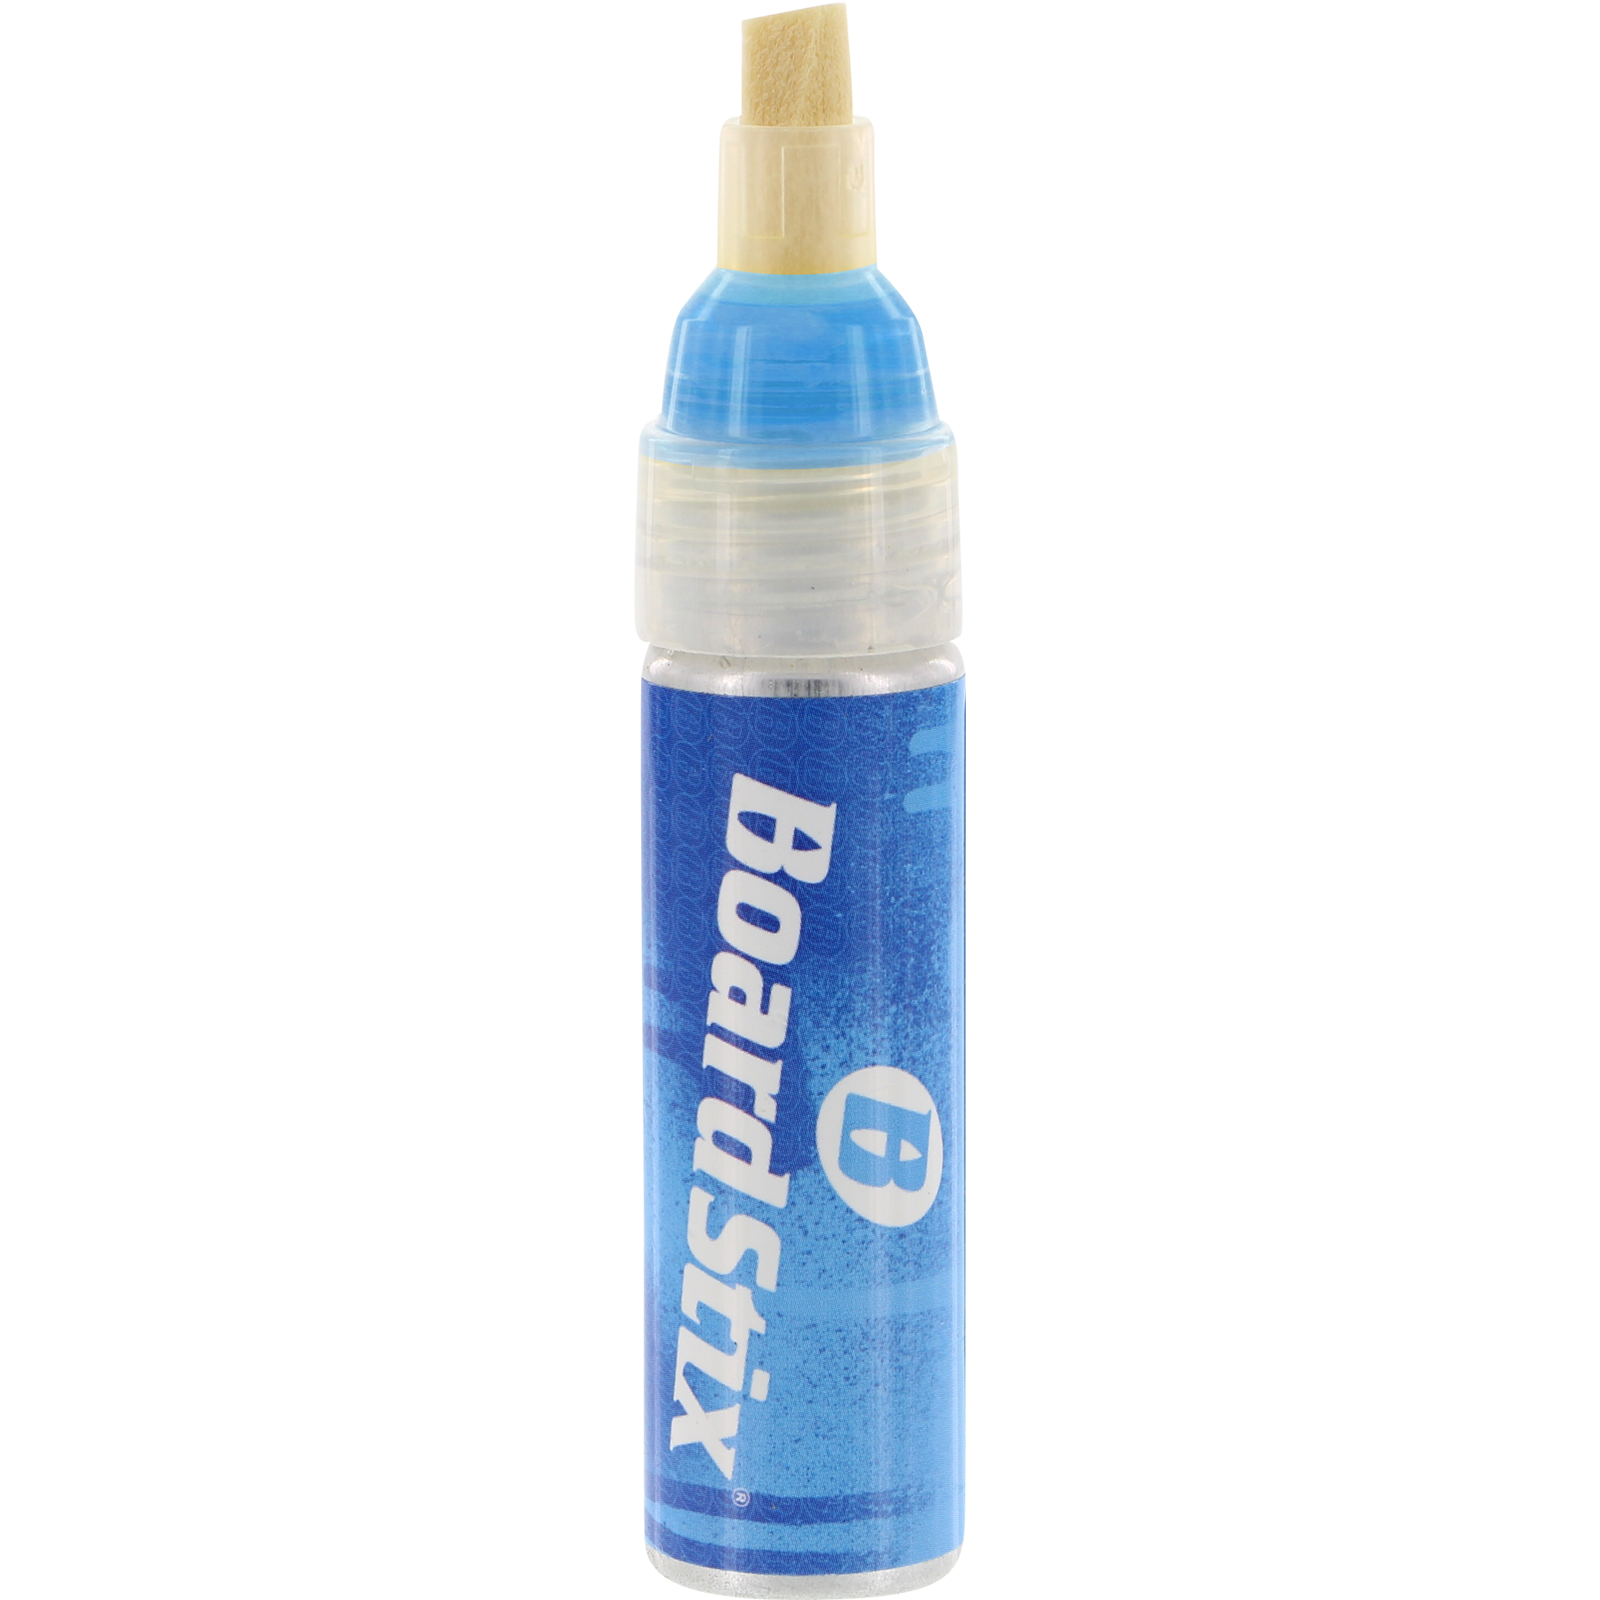 Boardstix Premium Paint Pen Flourescent Blue